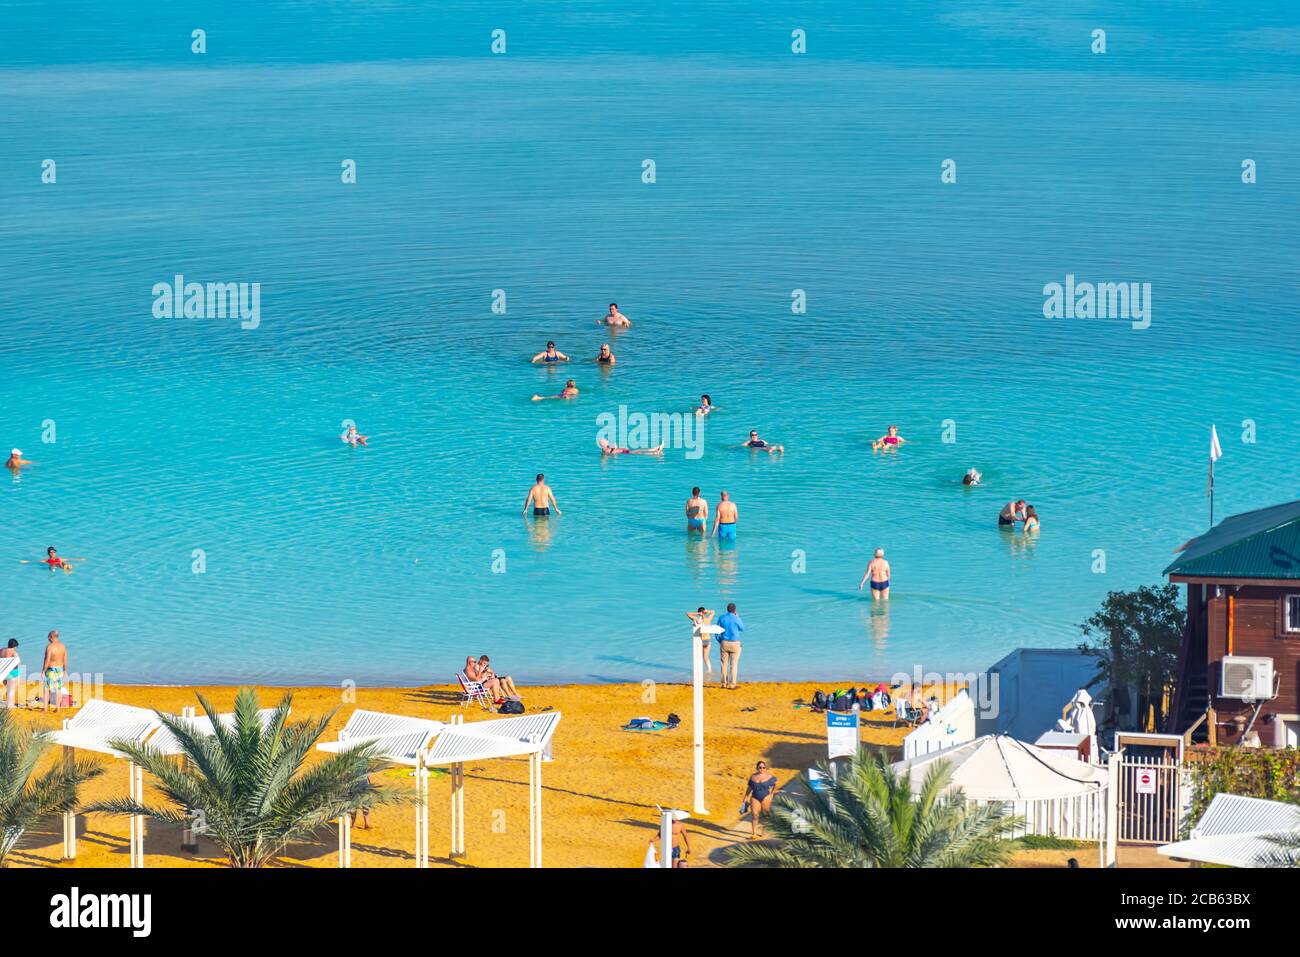 Les touristes flottent dans les eaux lourdes de la mer Morte, Israël Banque D'Images